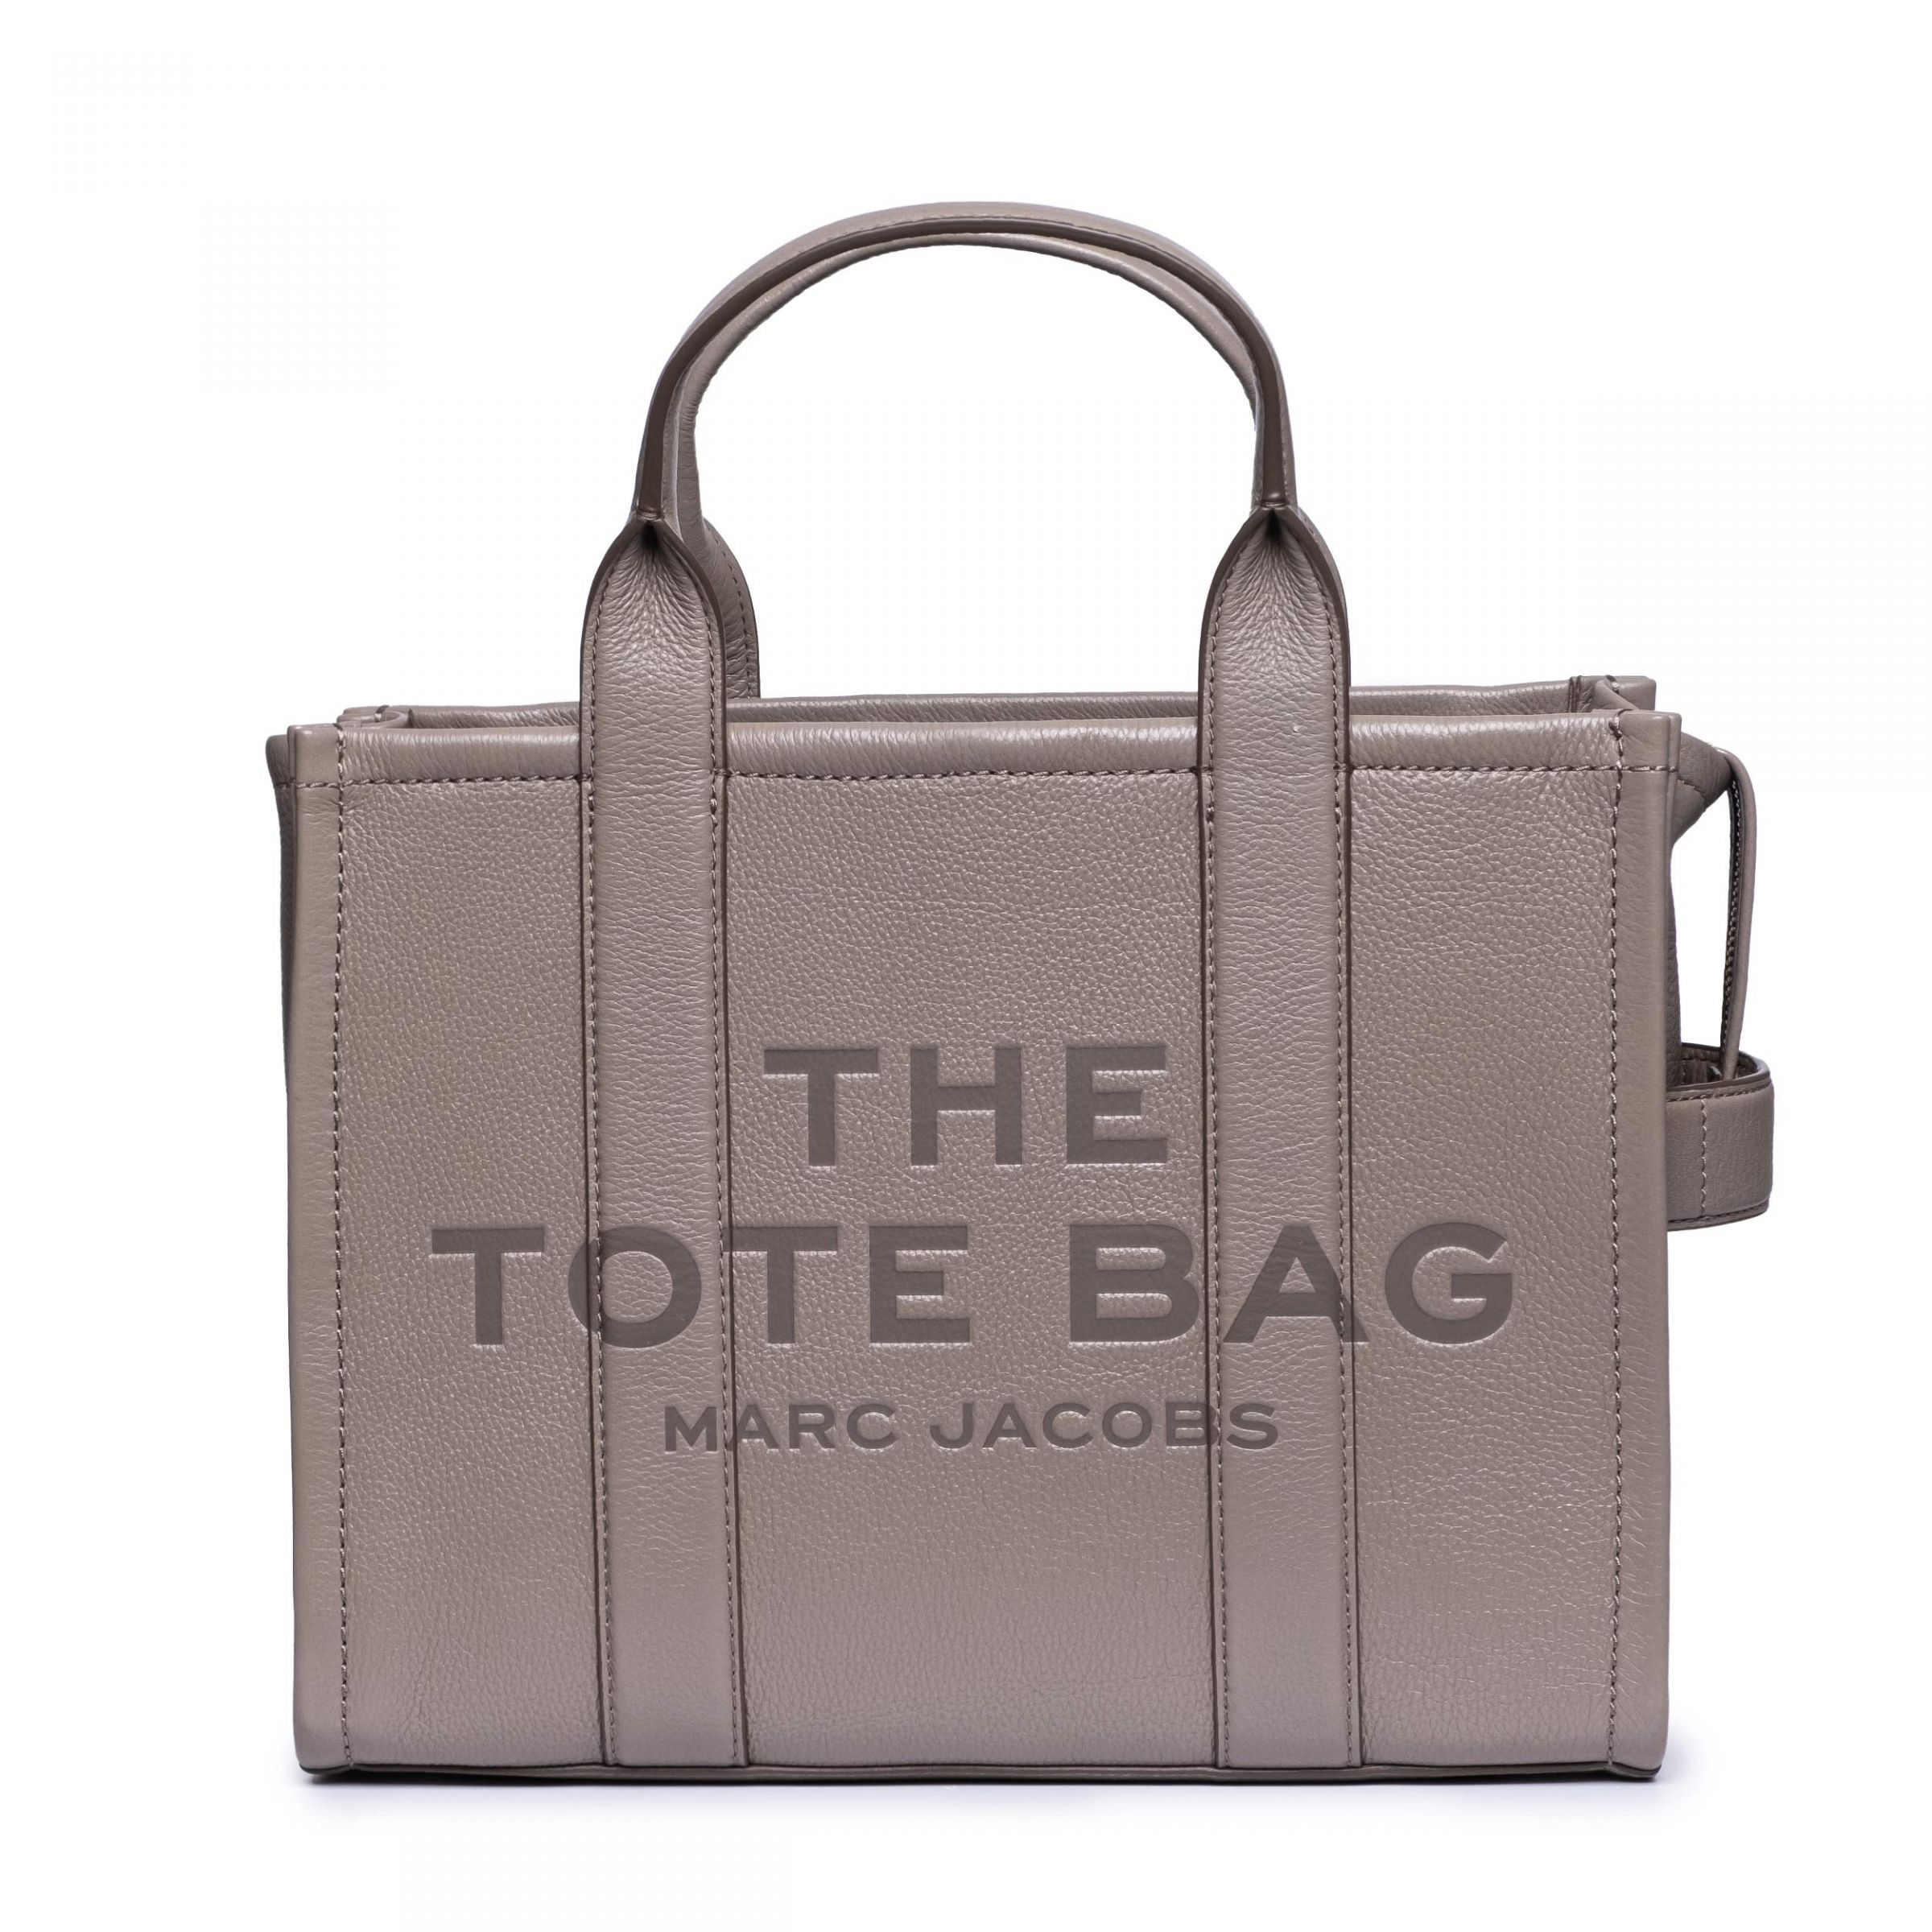 Сумка Marc Jacobs The Tote Bag серая